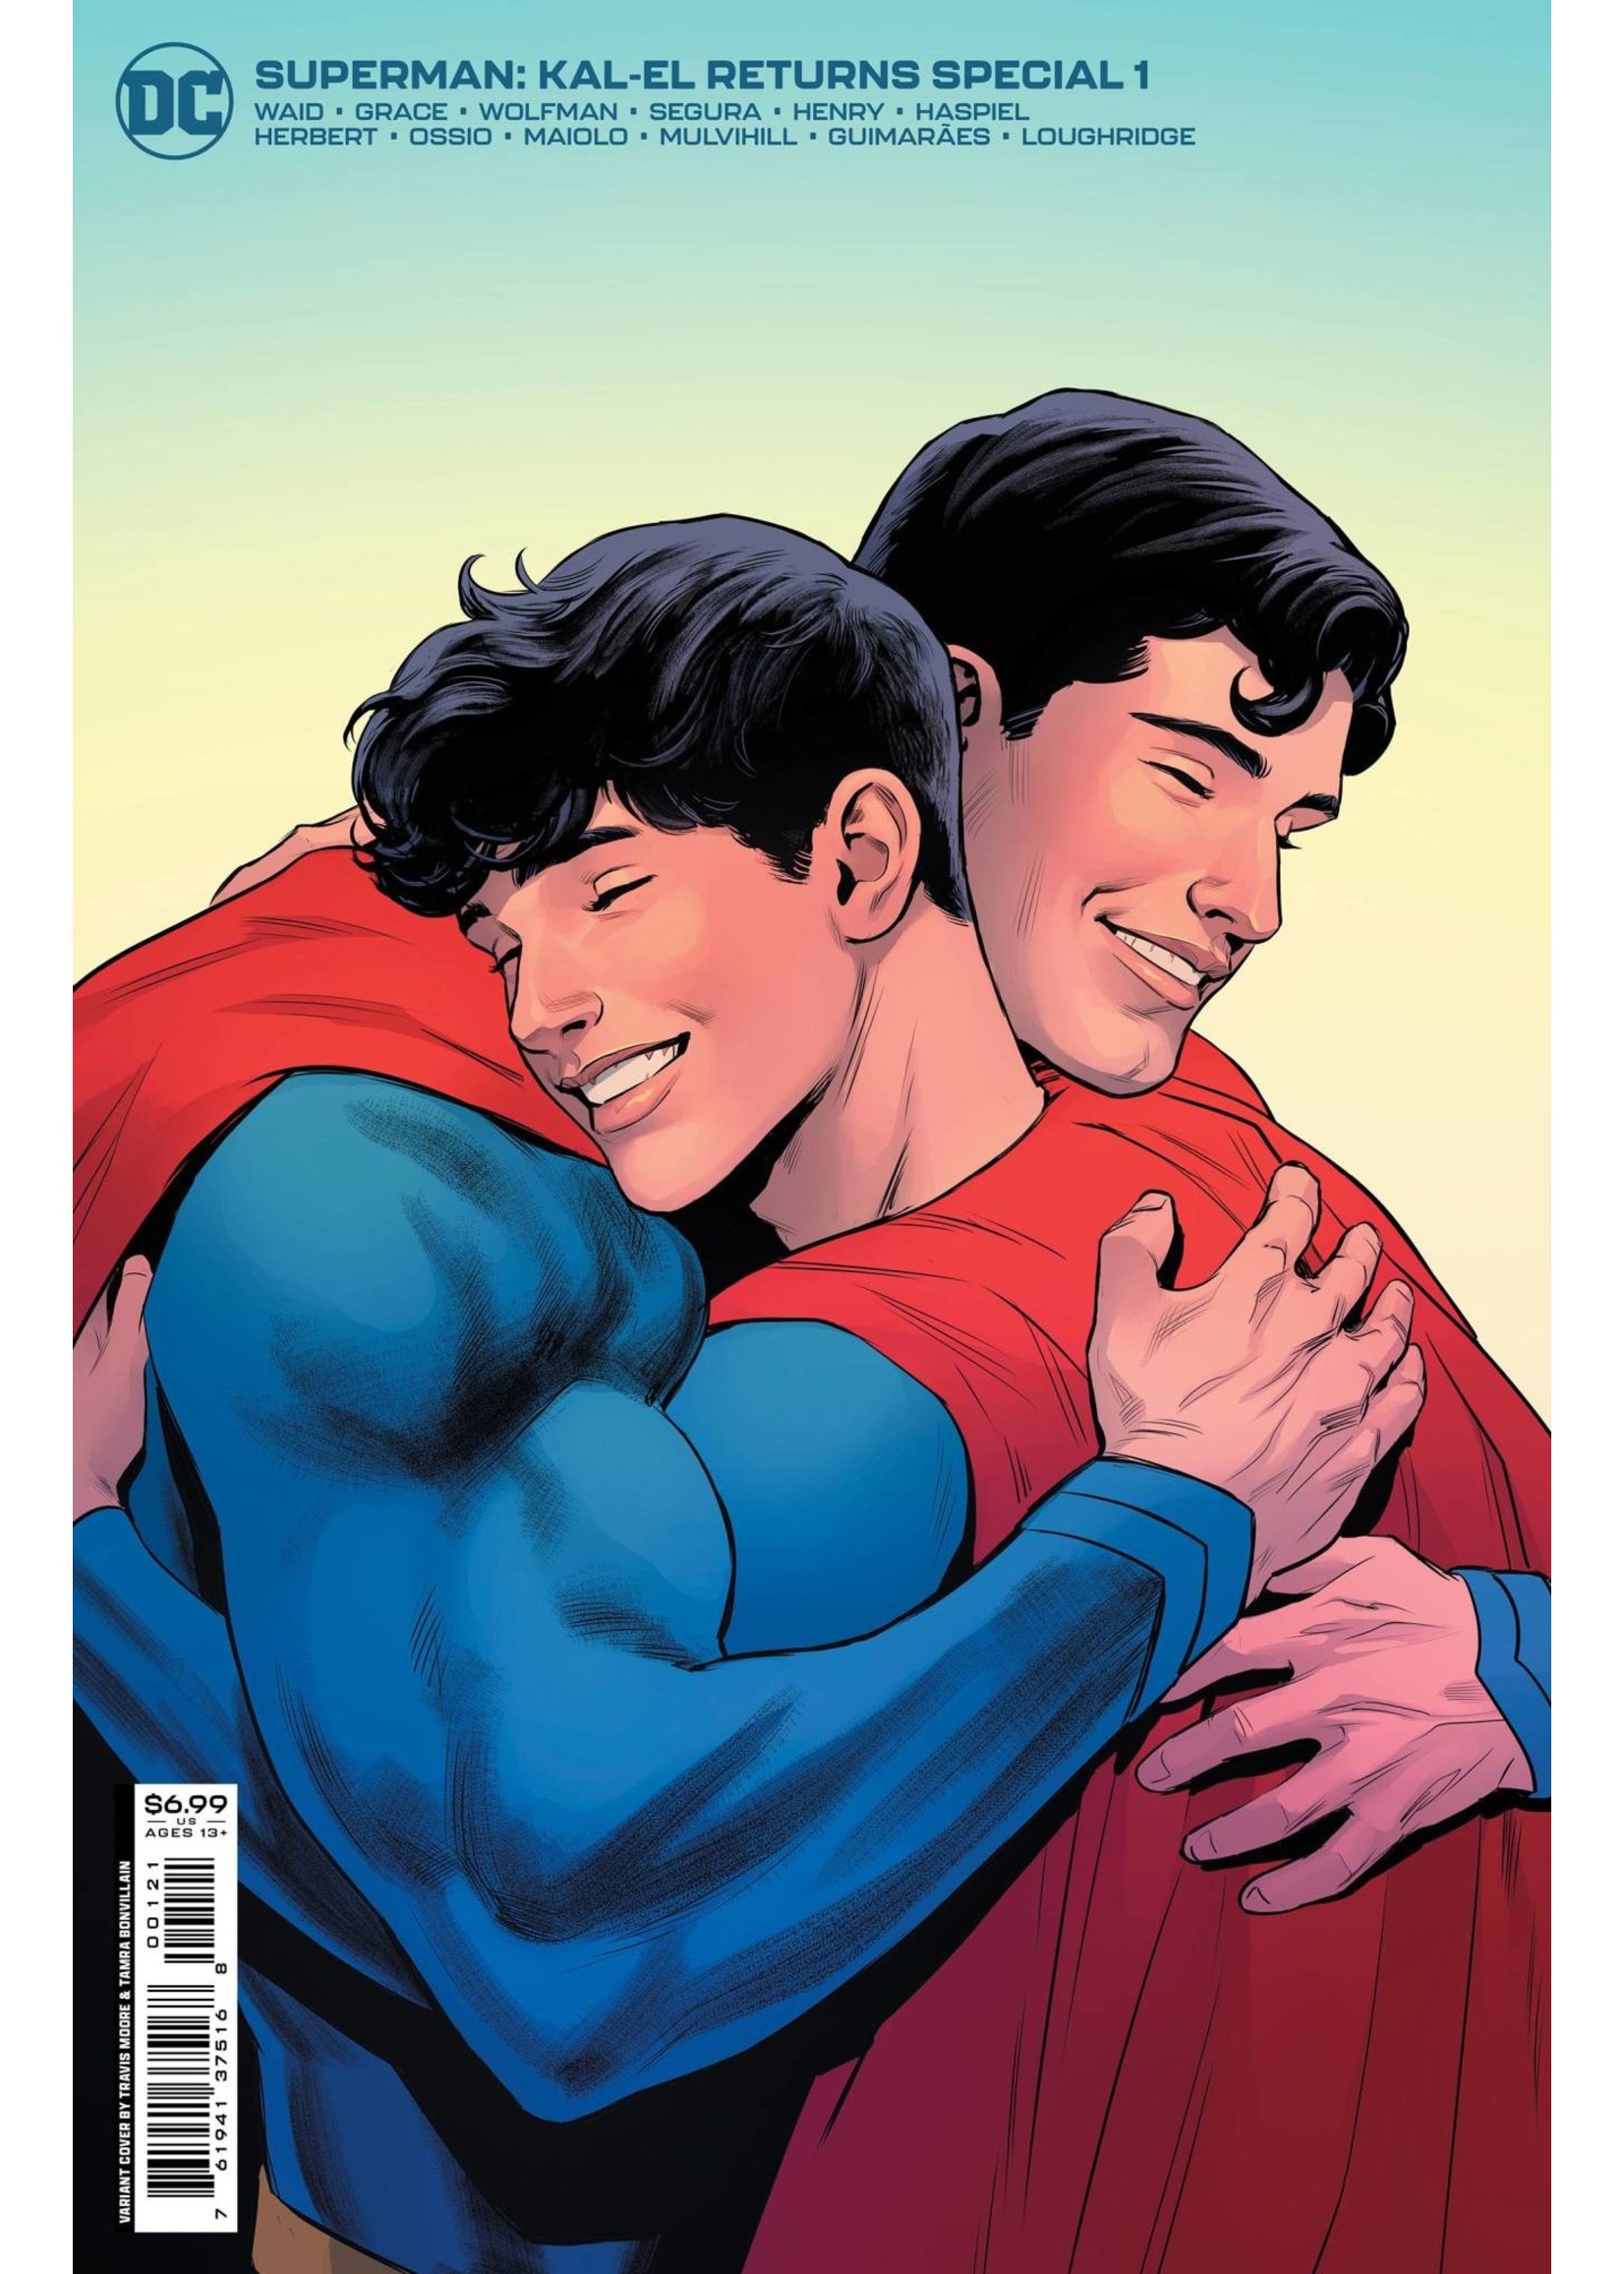 DC COMICS SUPERMAN KAL-EL RETURNS SPECIAL #1 CVR B